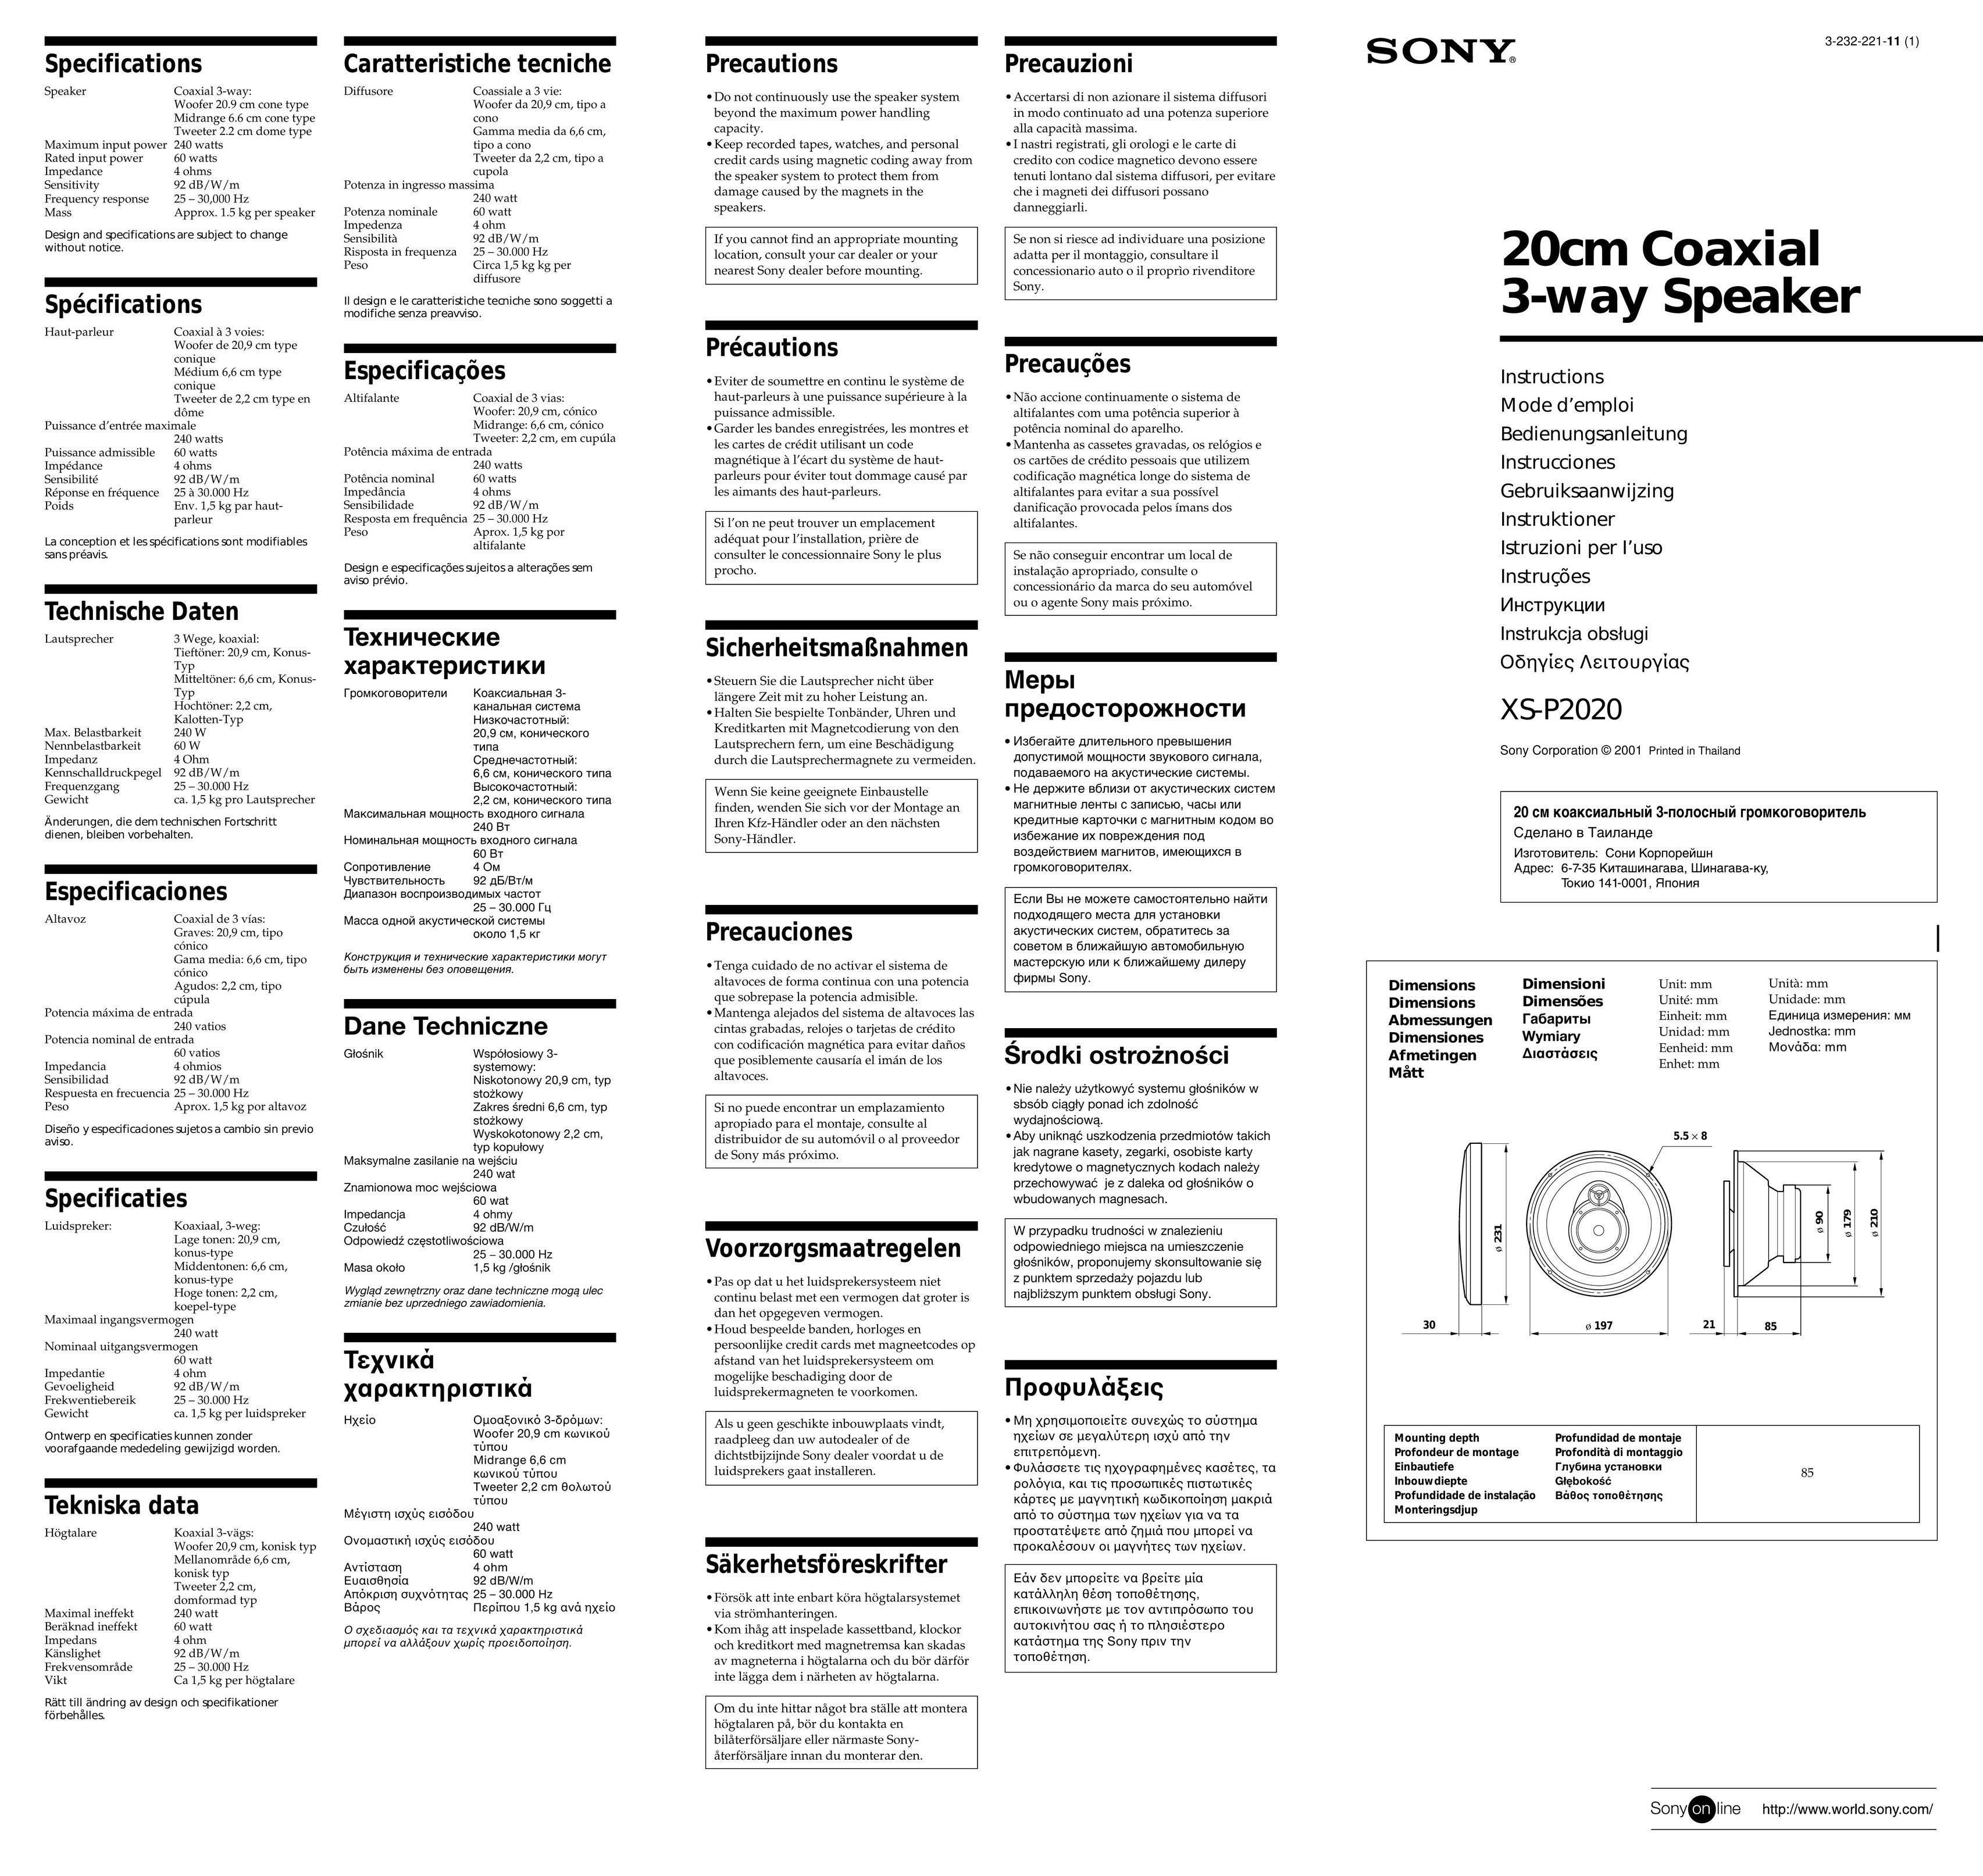 Sony XS-P2020 Car Speaker User Manual